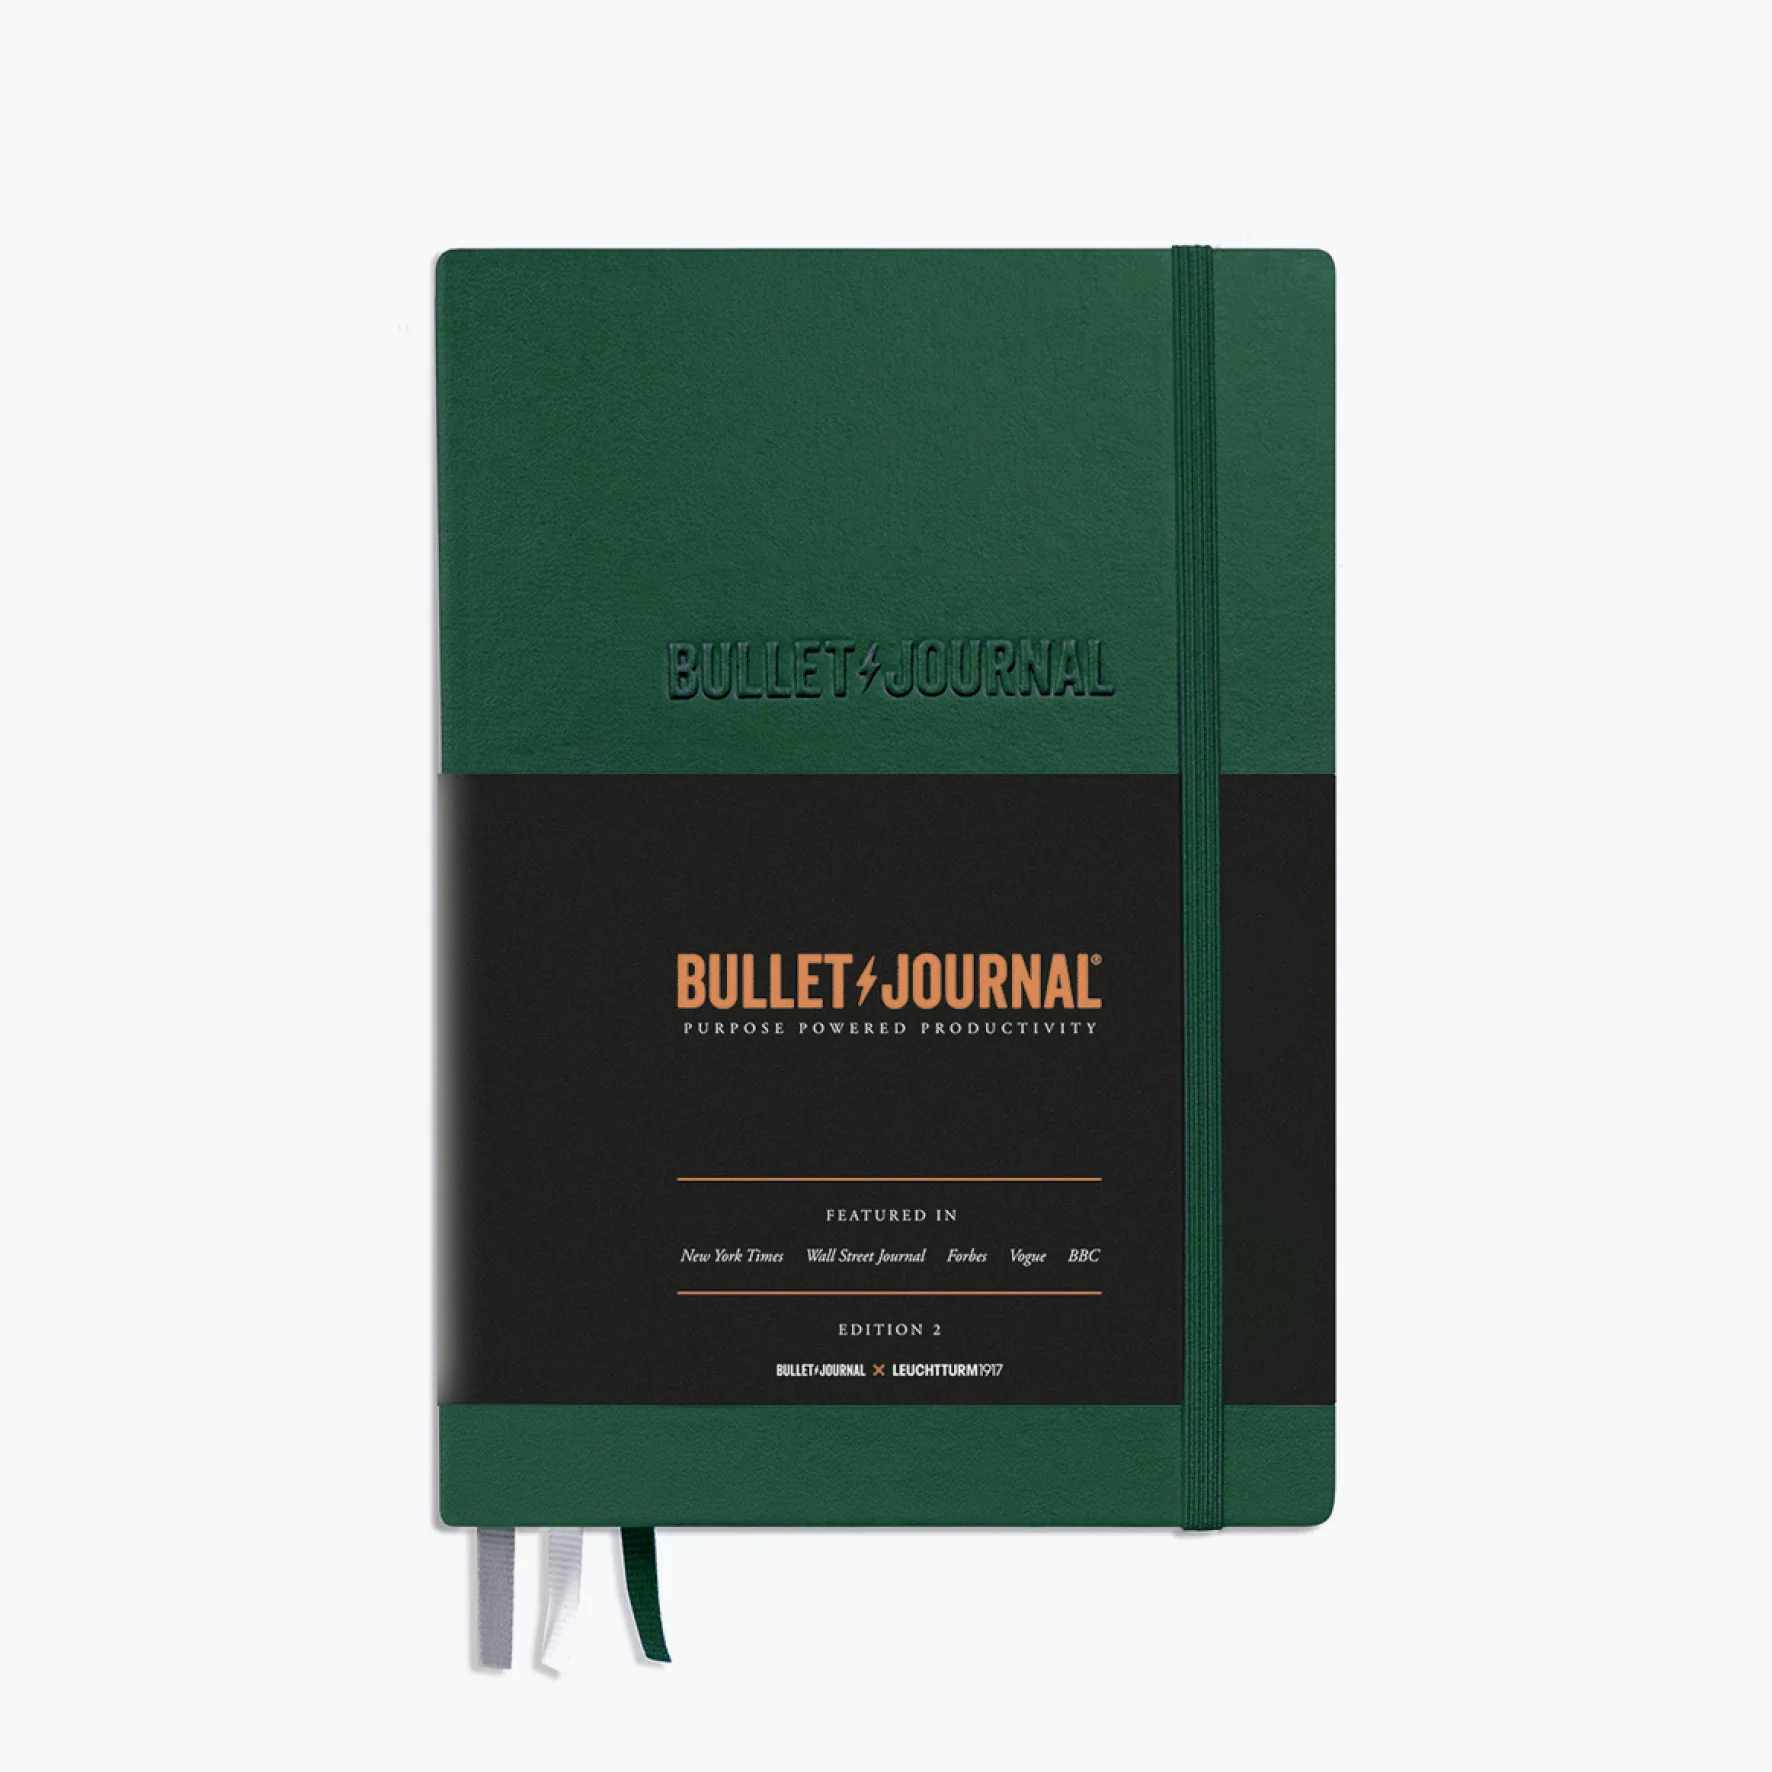 bullet journal edition 2 green by Leuchtturm1917